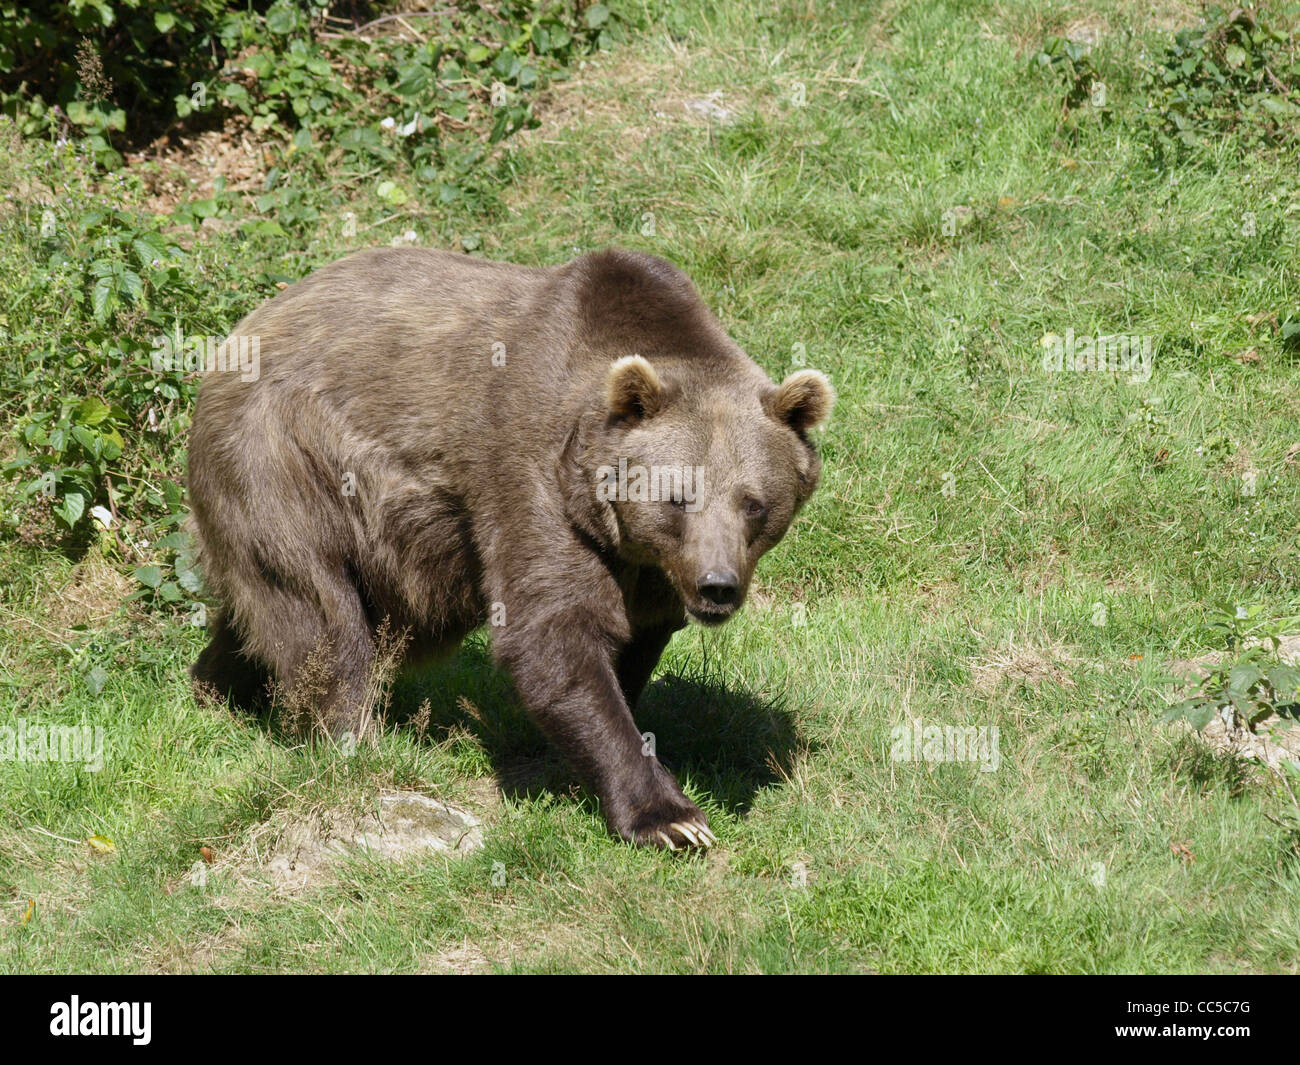 Brown bear in the NP national park Bavarian Forest / Ursus arctos / Europäischer Braunbär im NP Nationalpark Bayerischer Wald Stock Photo